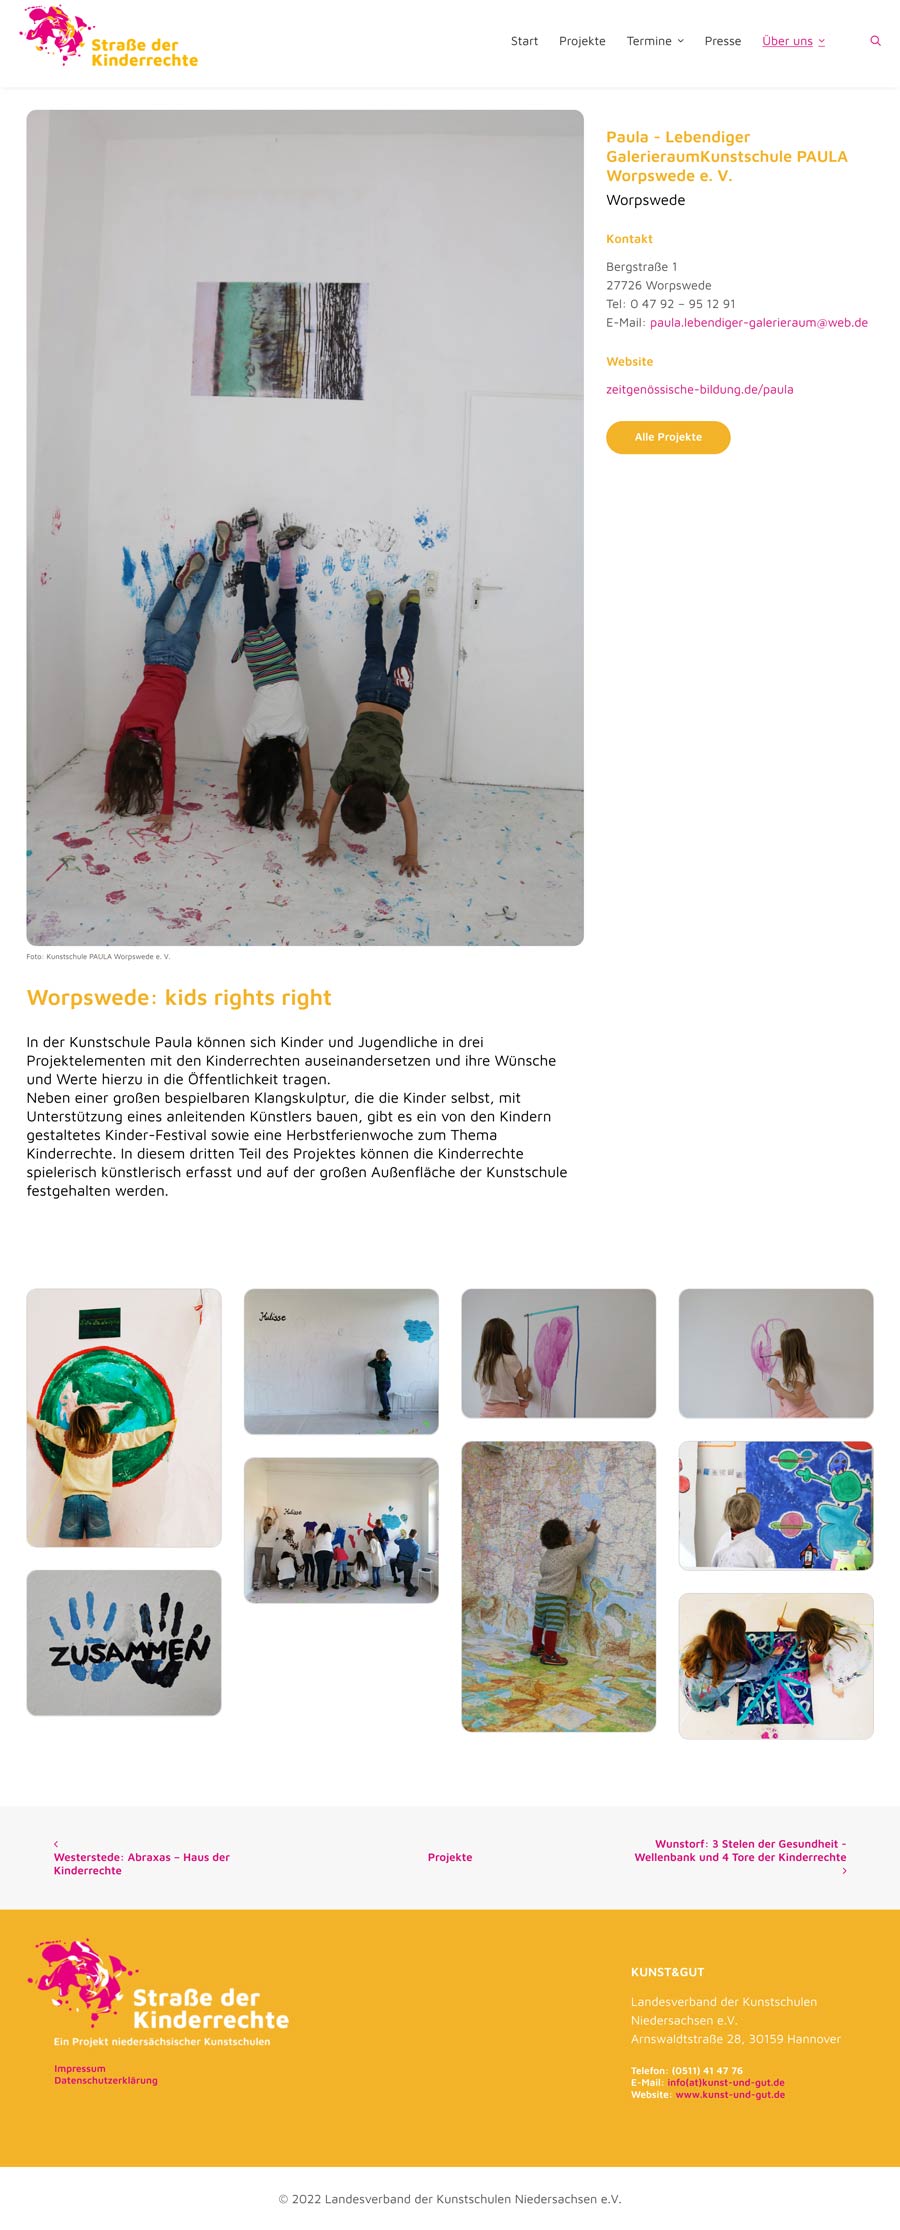 Beispielprojekt, Website Straße der Kinderrechte